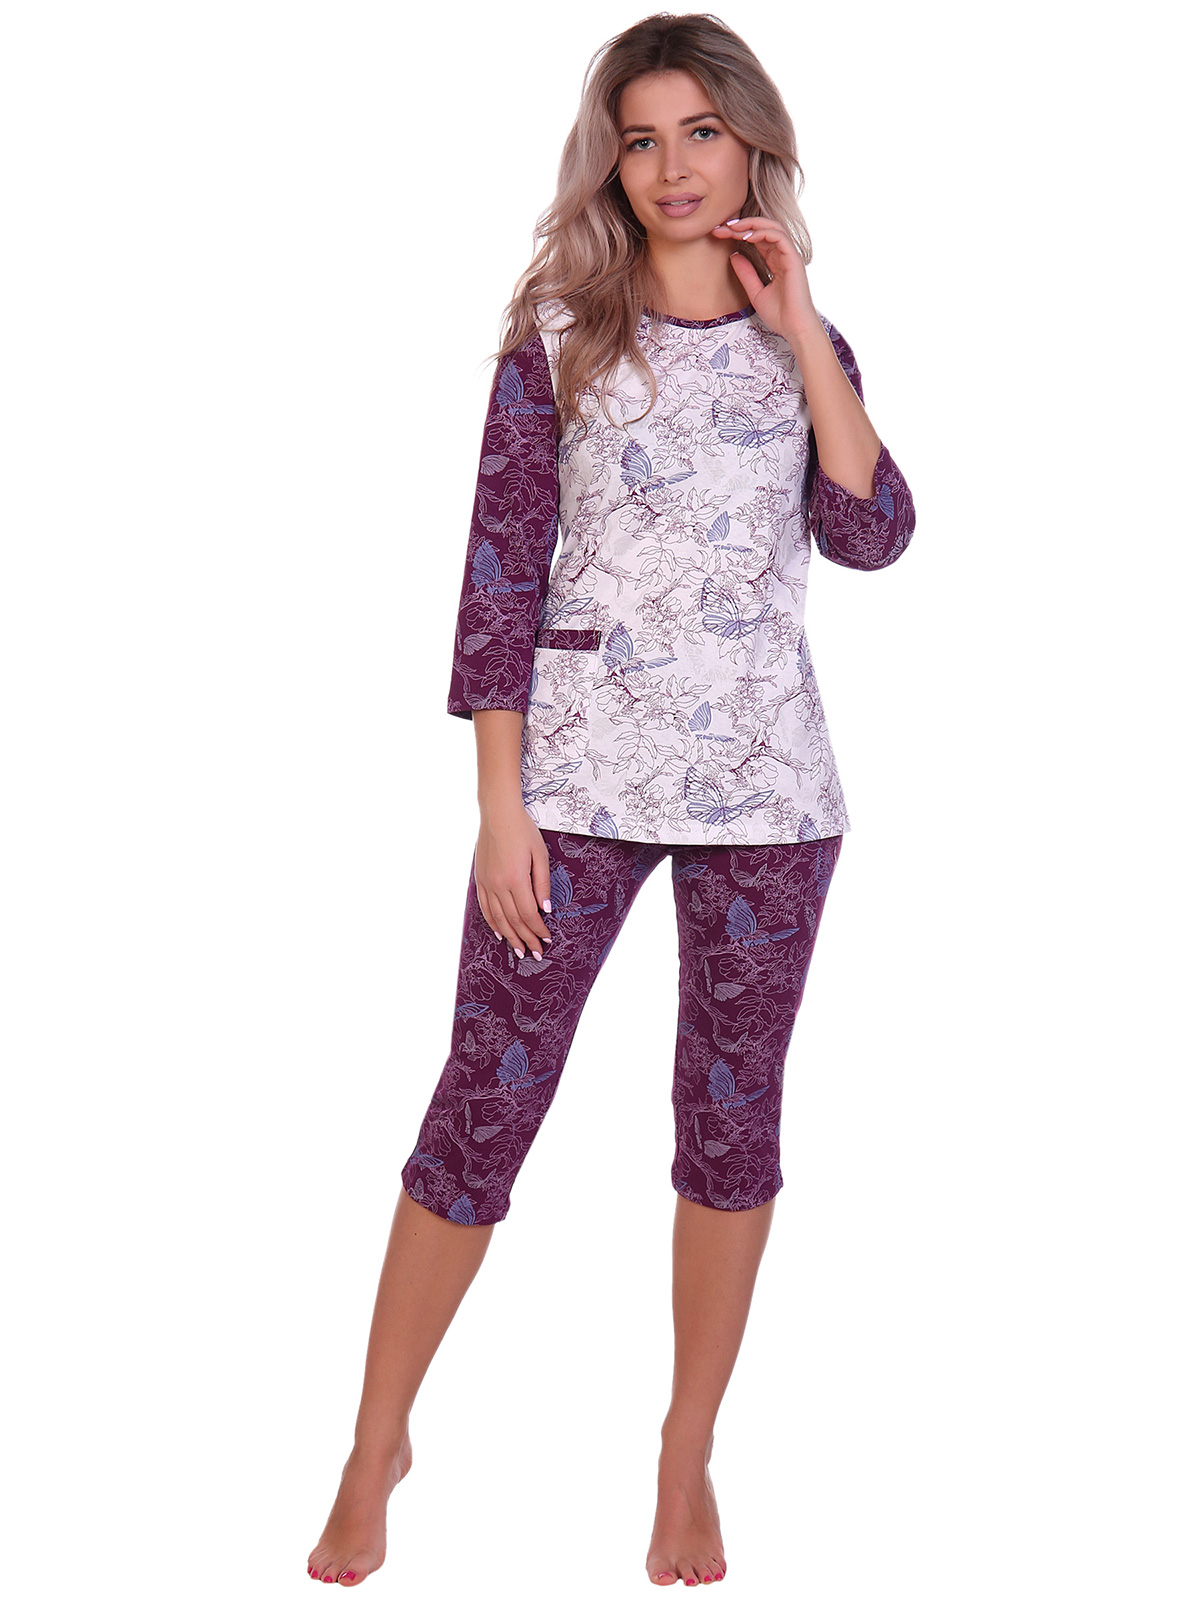 Жен. пижама арт. 16-0705 Бордовый р. 62 НСД Трикотаж, размер 62 - фото 2